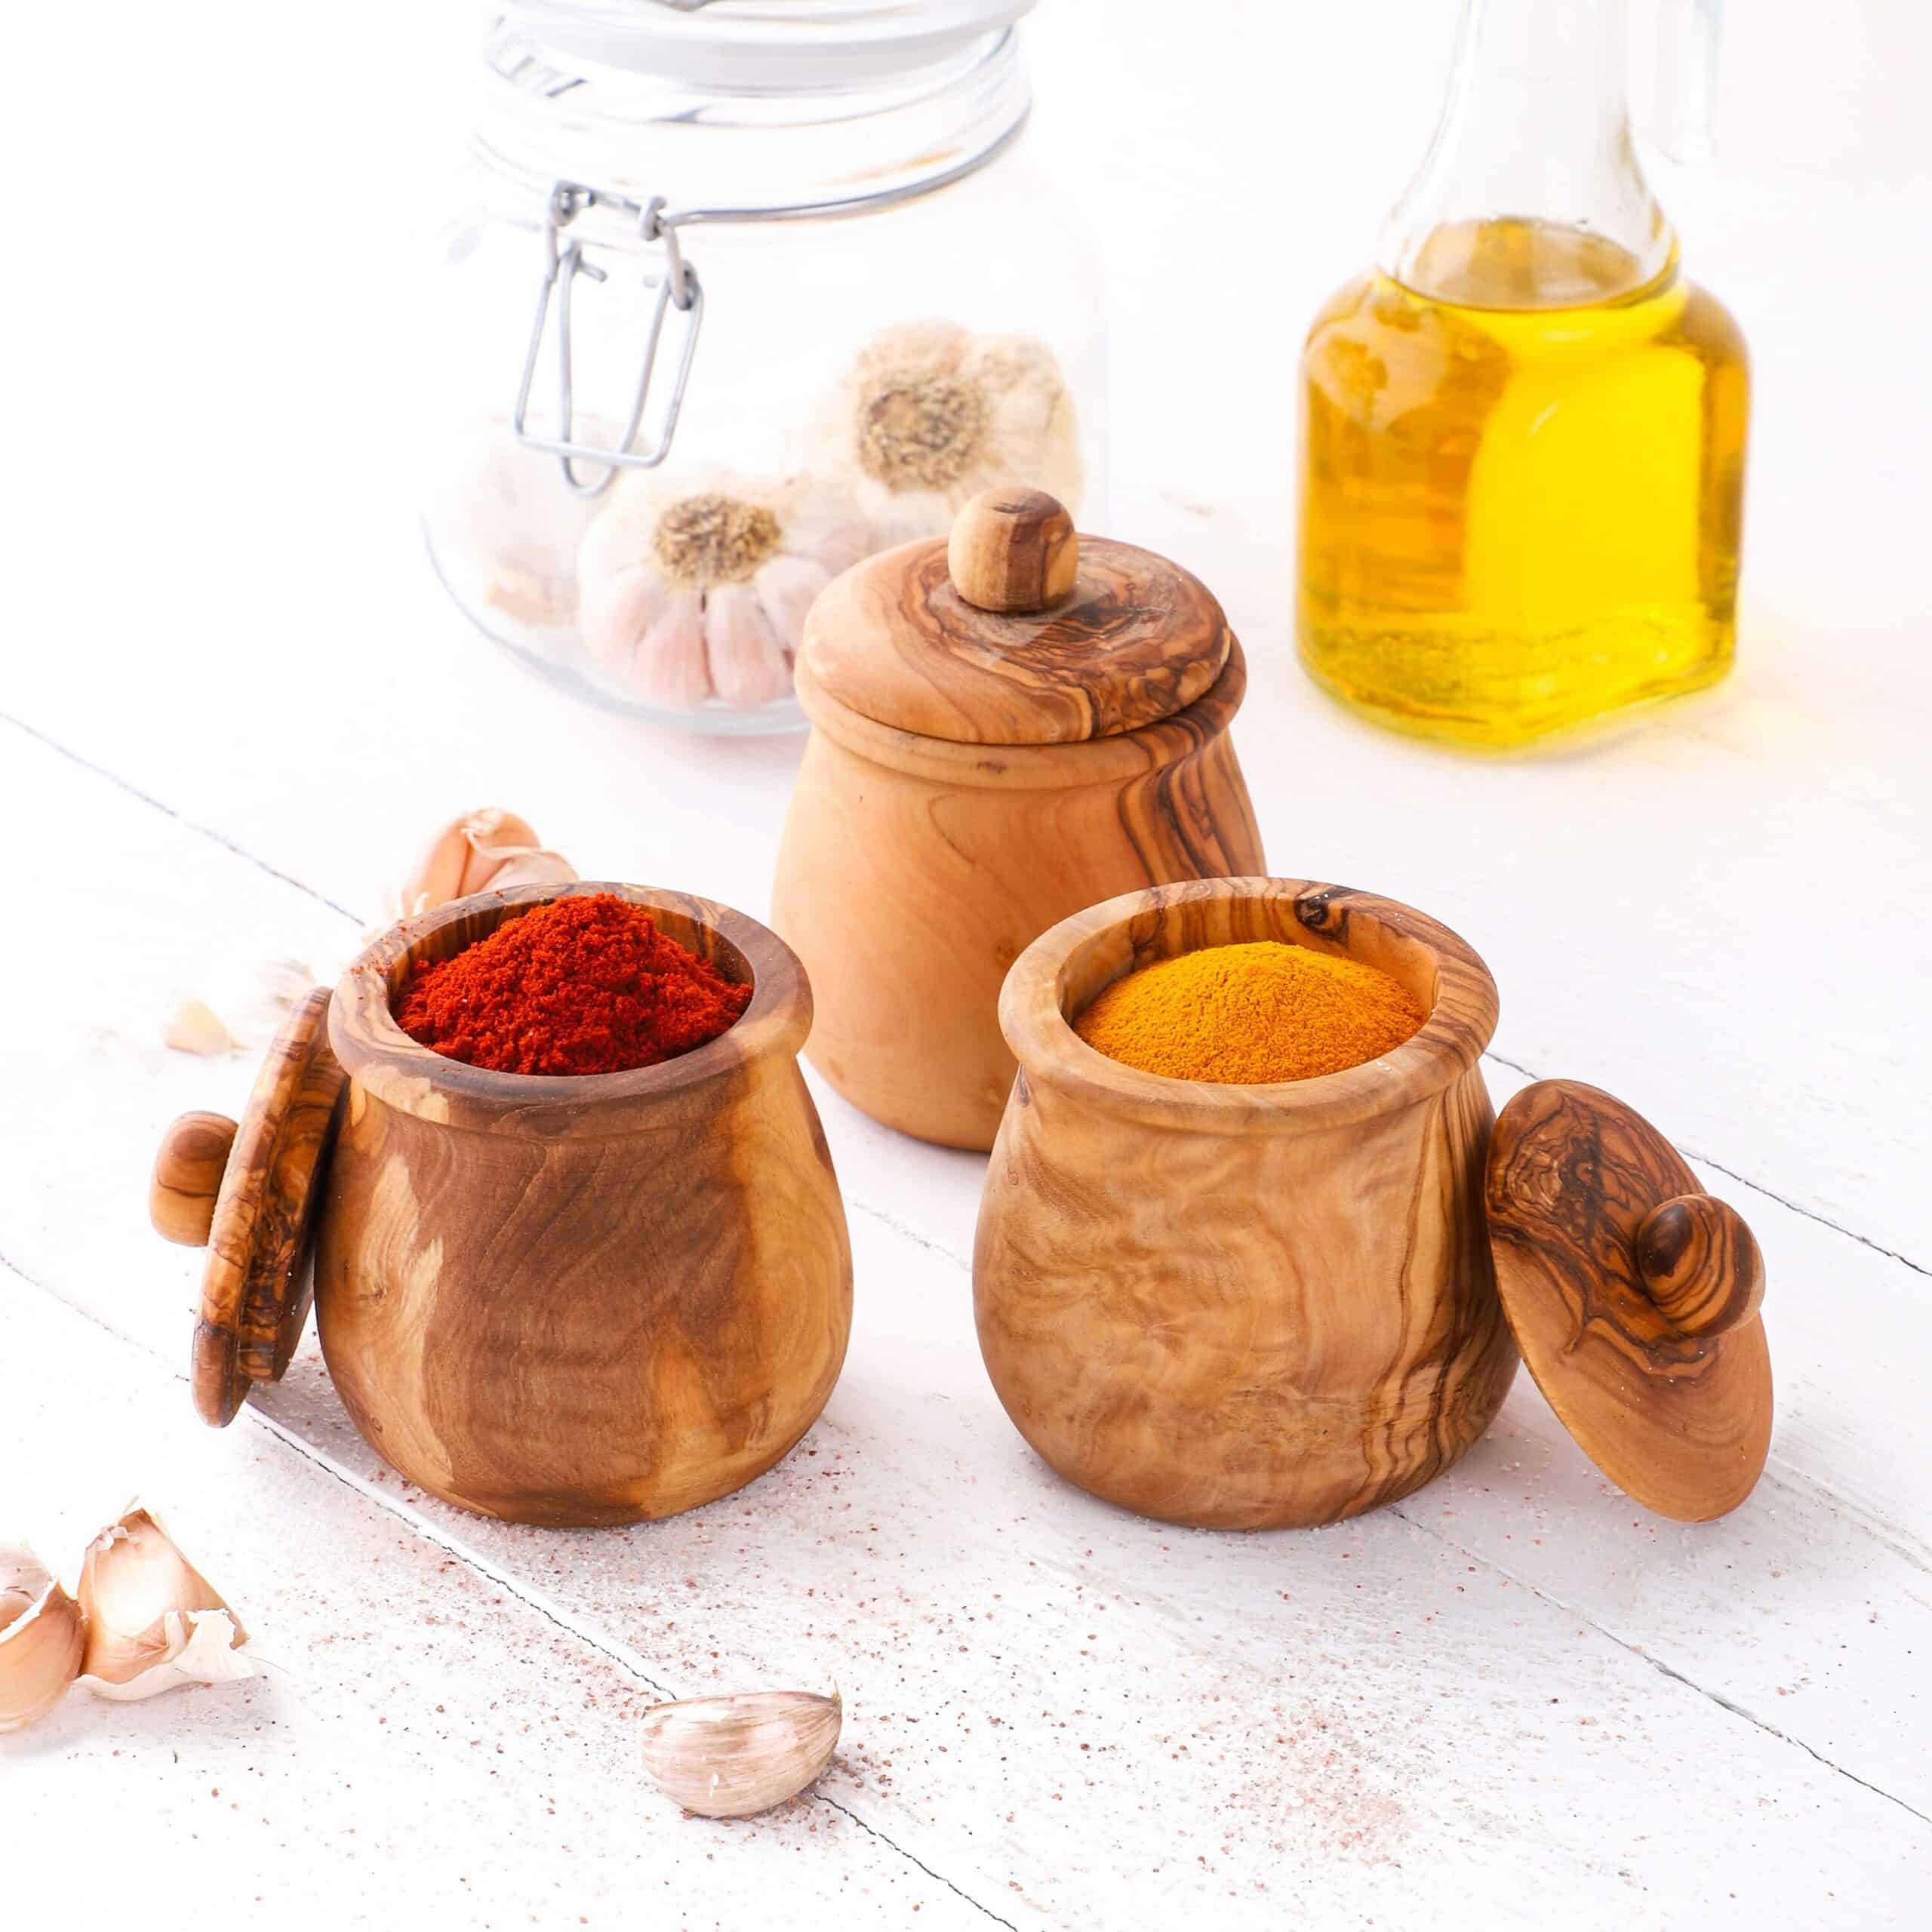 Set of 3 Wood Spice Jars Wooden Lids